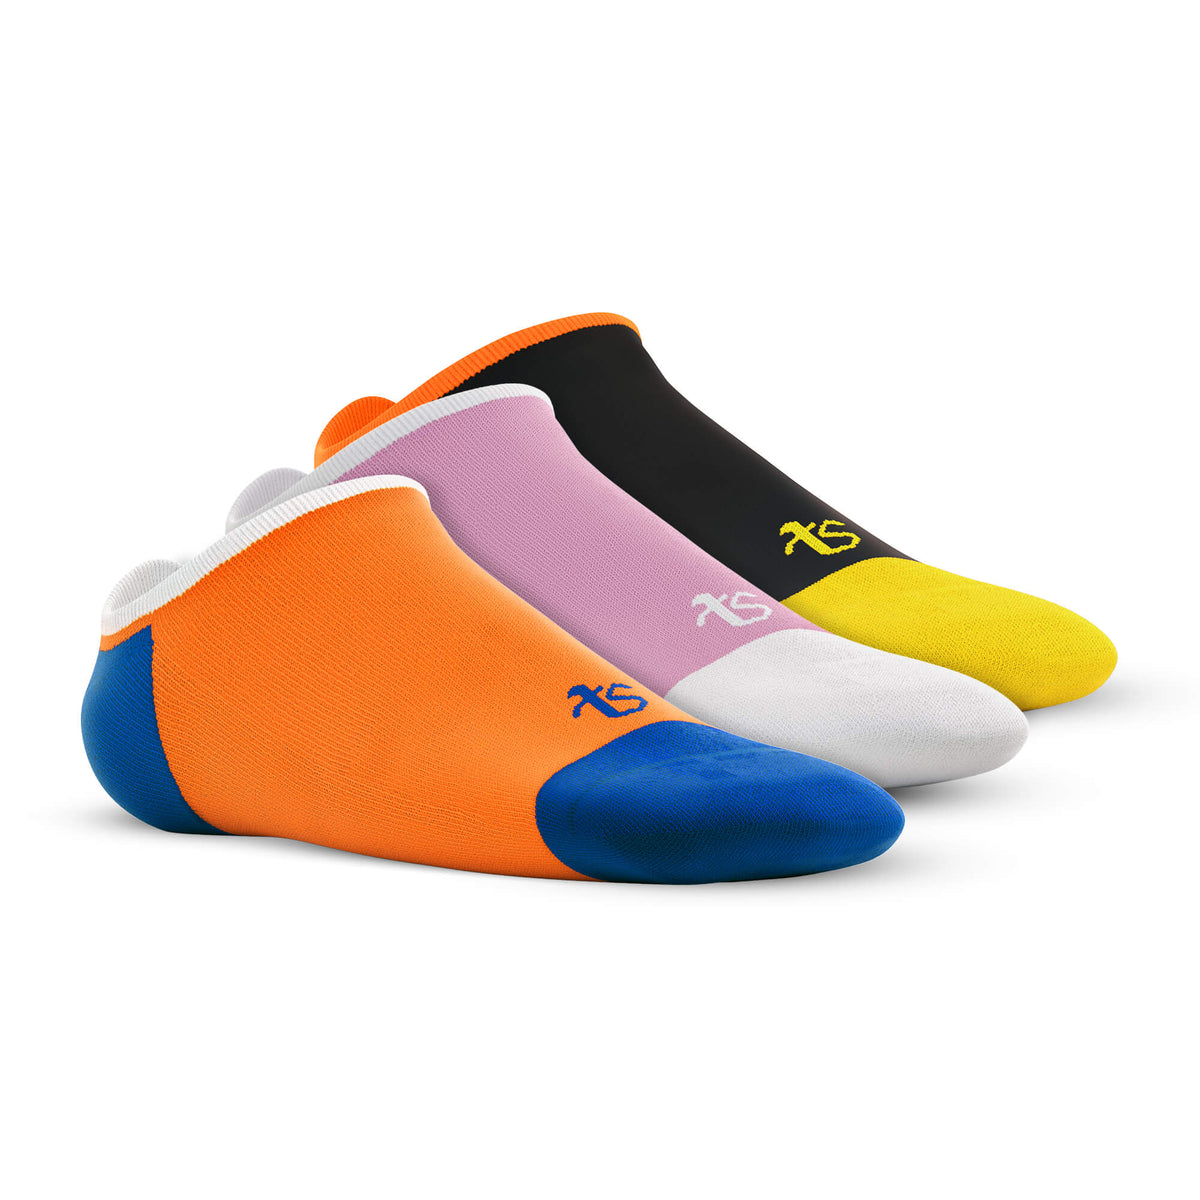 Loafer – See me – Pink, Orange, Black – Set of 3